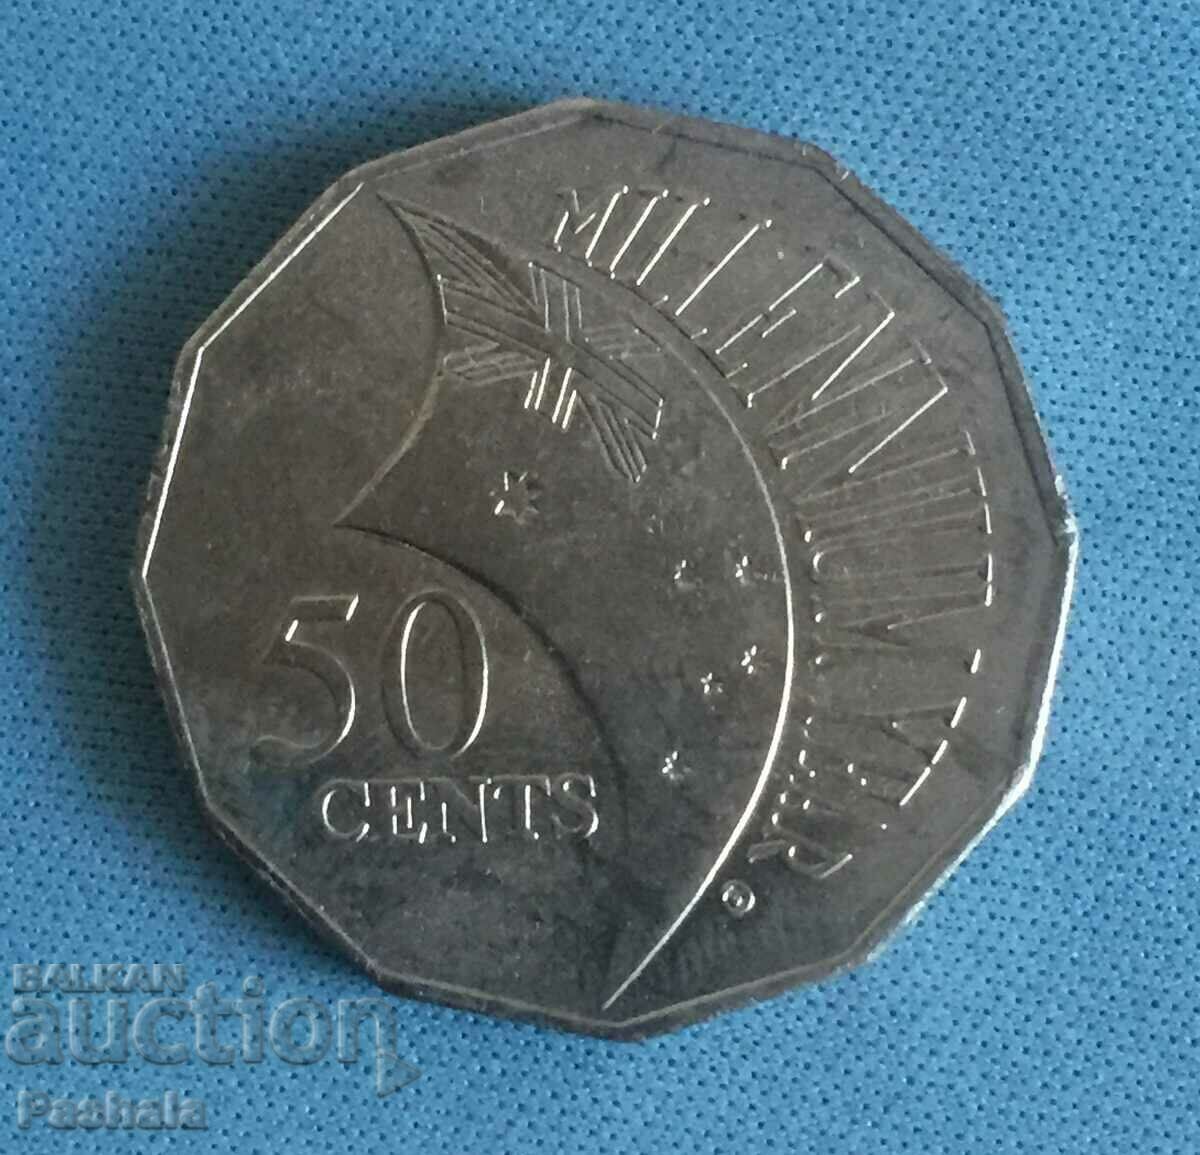 Αυστραλία 50 σεντς 2000